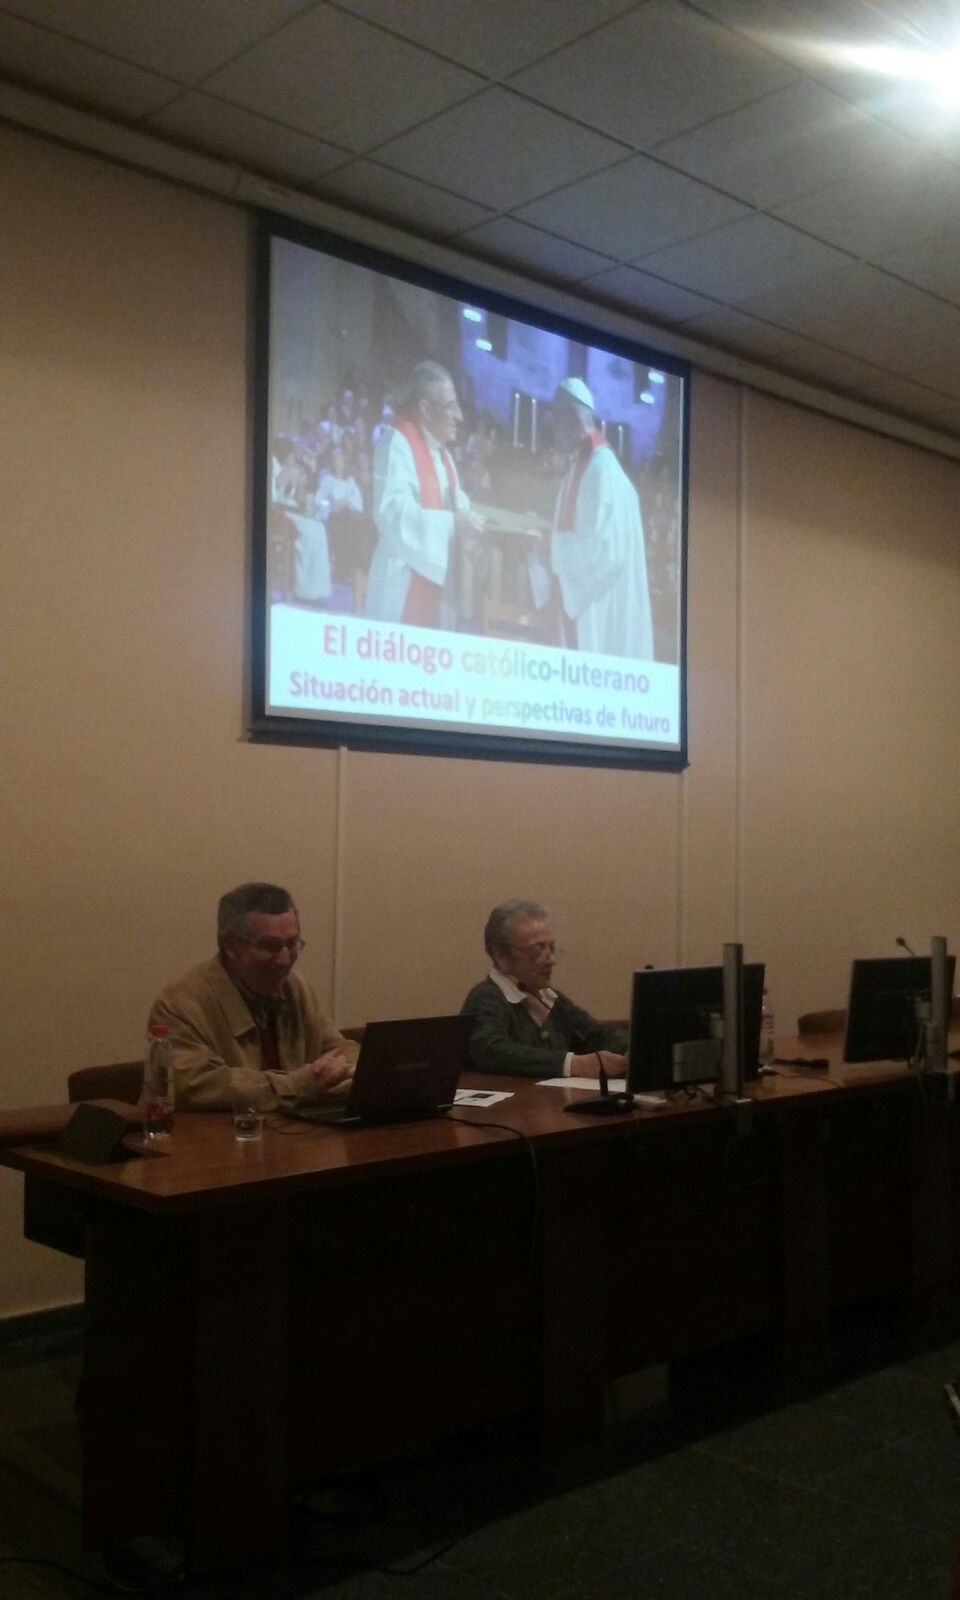 Imagen en la que se pueden ver a los ponentes de la segunda conferencia del ciclo de la reforma protestante, detrás de ellos hay una pantalla de proyección